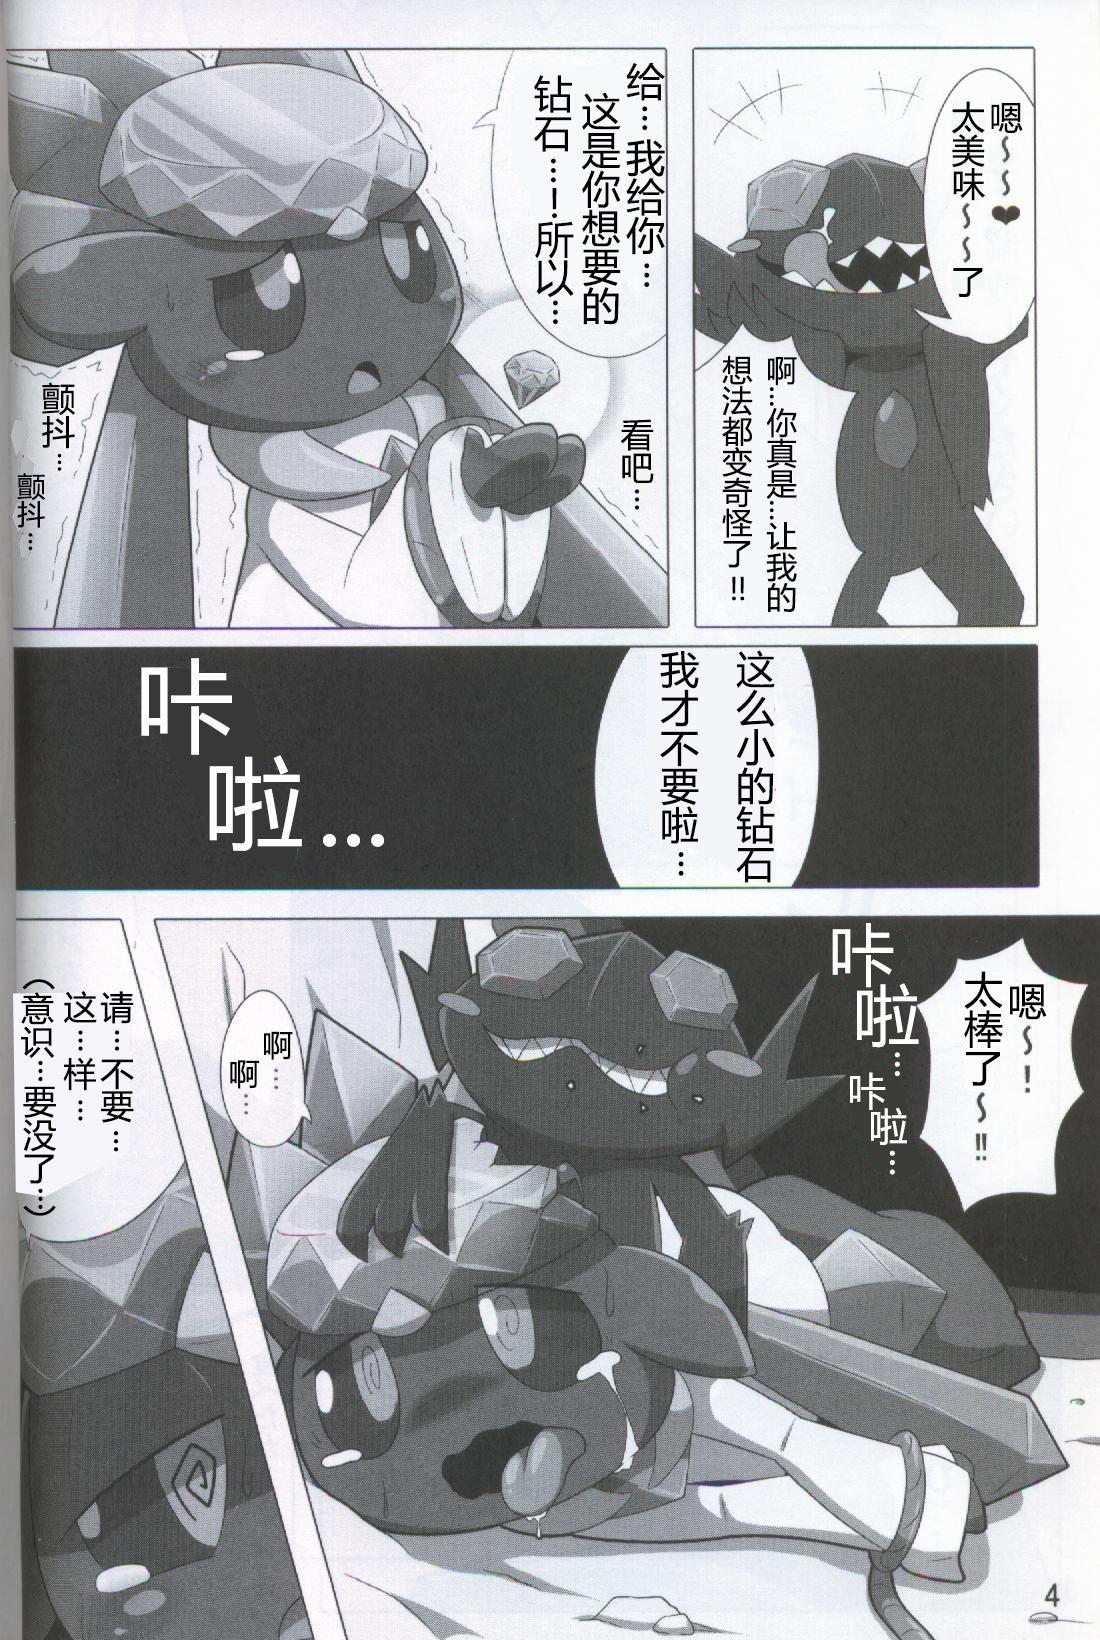 Stunning Pokéda | 宝可堕 - Pokemon Jerking Off - Page 5